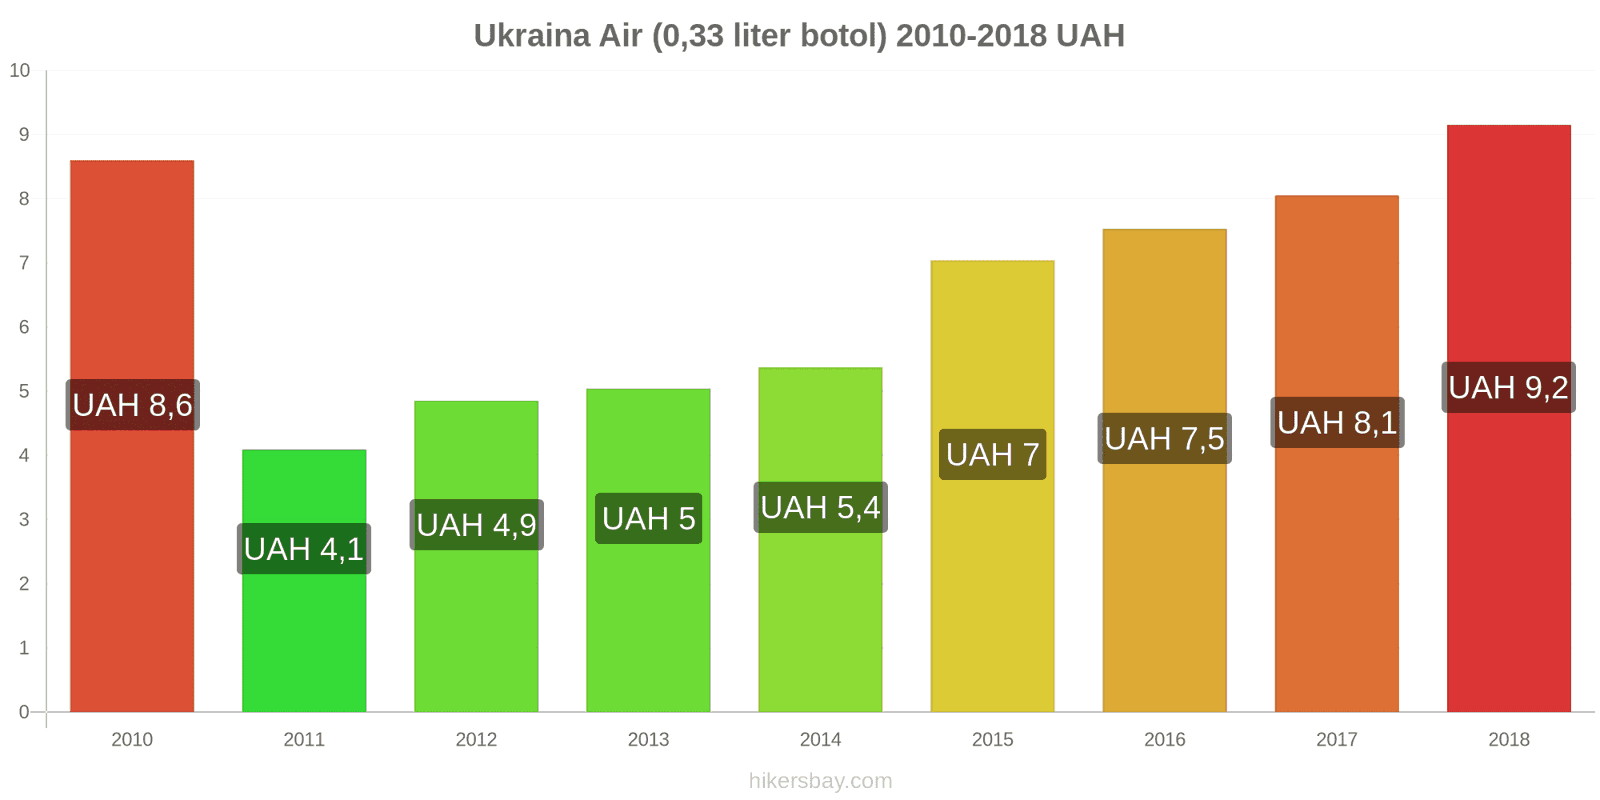 Ukraina perubahan harga Air (botol 0.33 liter) hikersbay.com